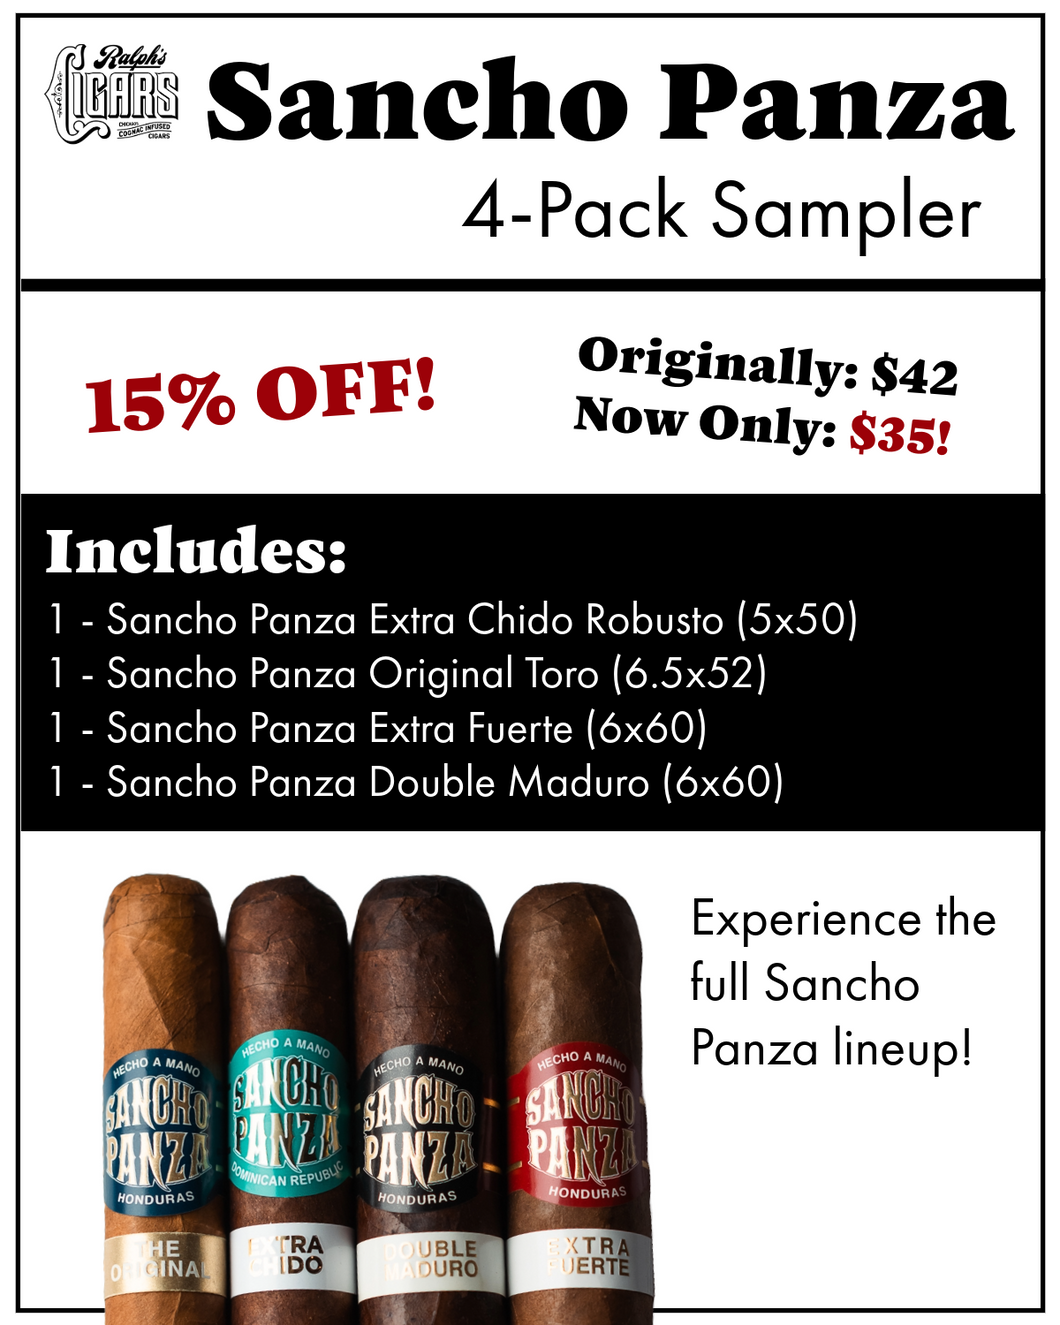 Sancho Panza 4-Pack Sampler